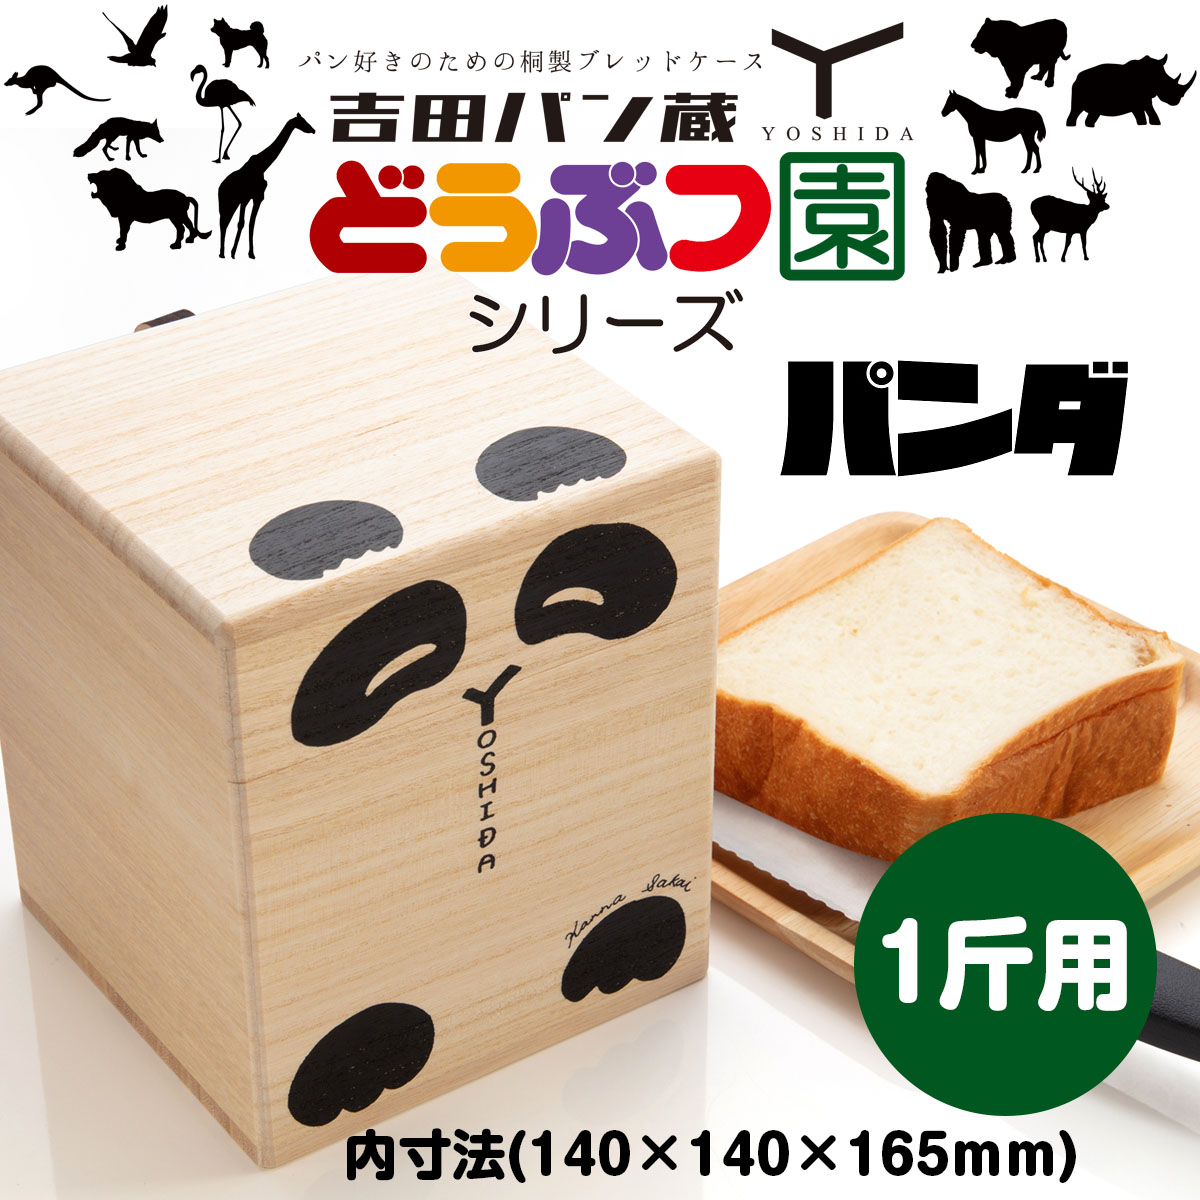 パン好きのための桐製ブレッドケース 吉田パン蔵 1斤用【パンダ】 FZ22-499